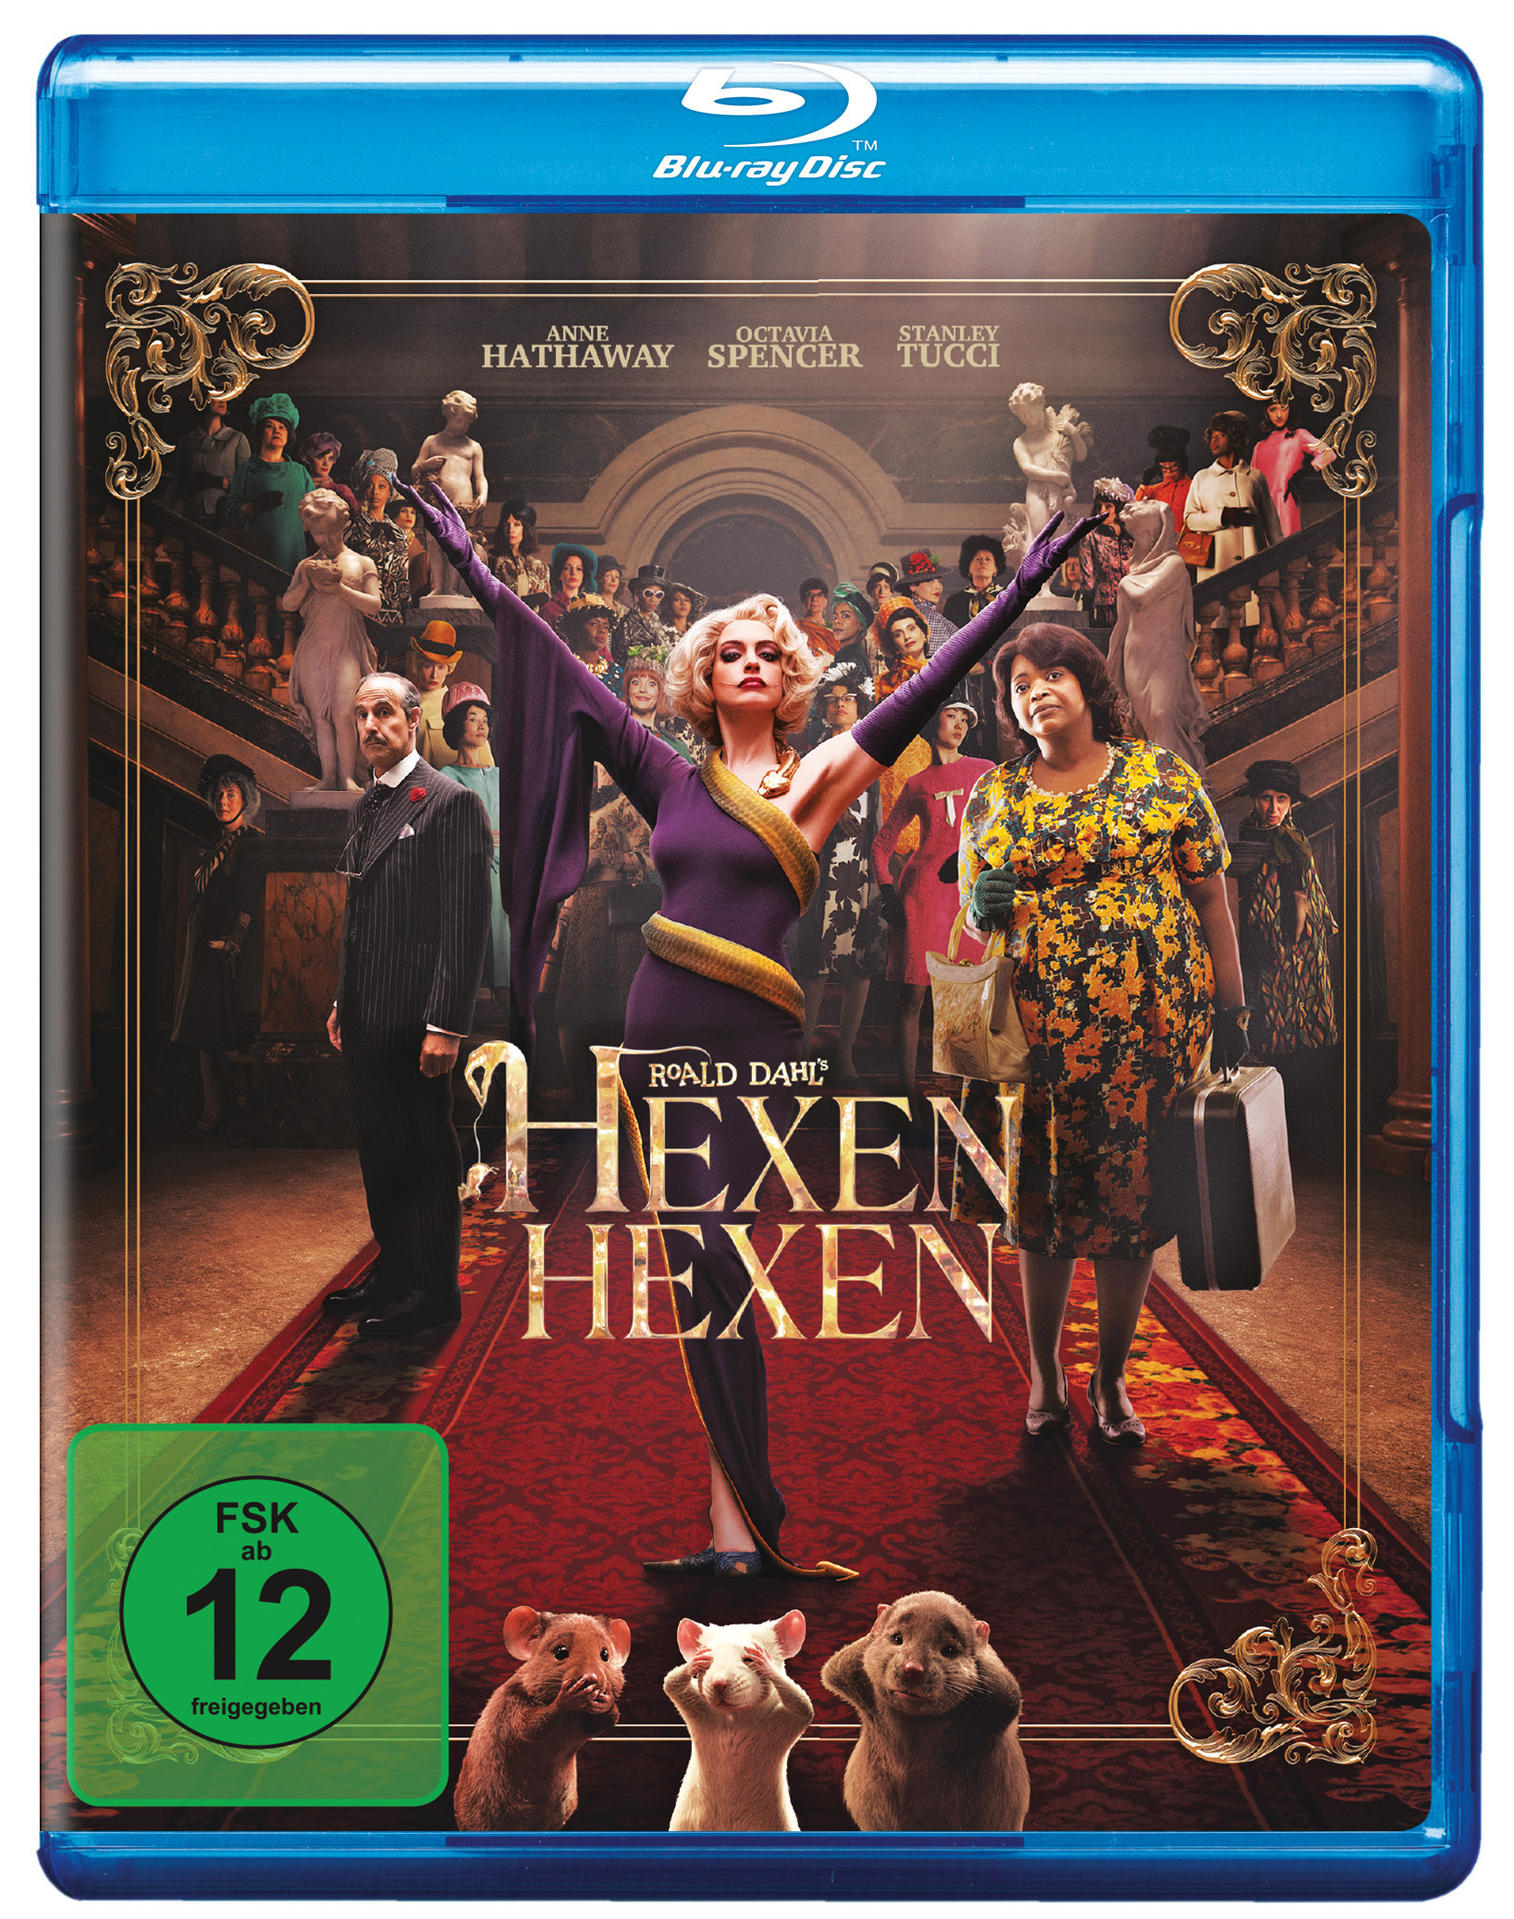 Hexen Blu-ray hexen